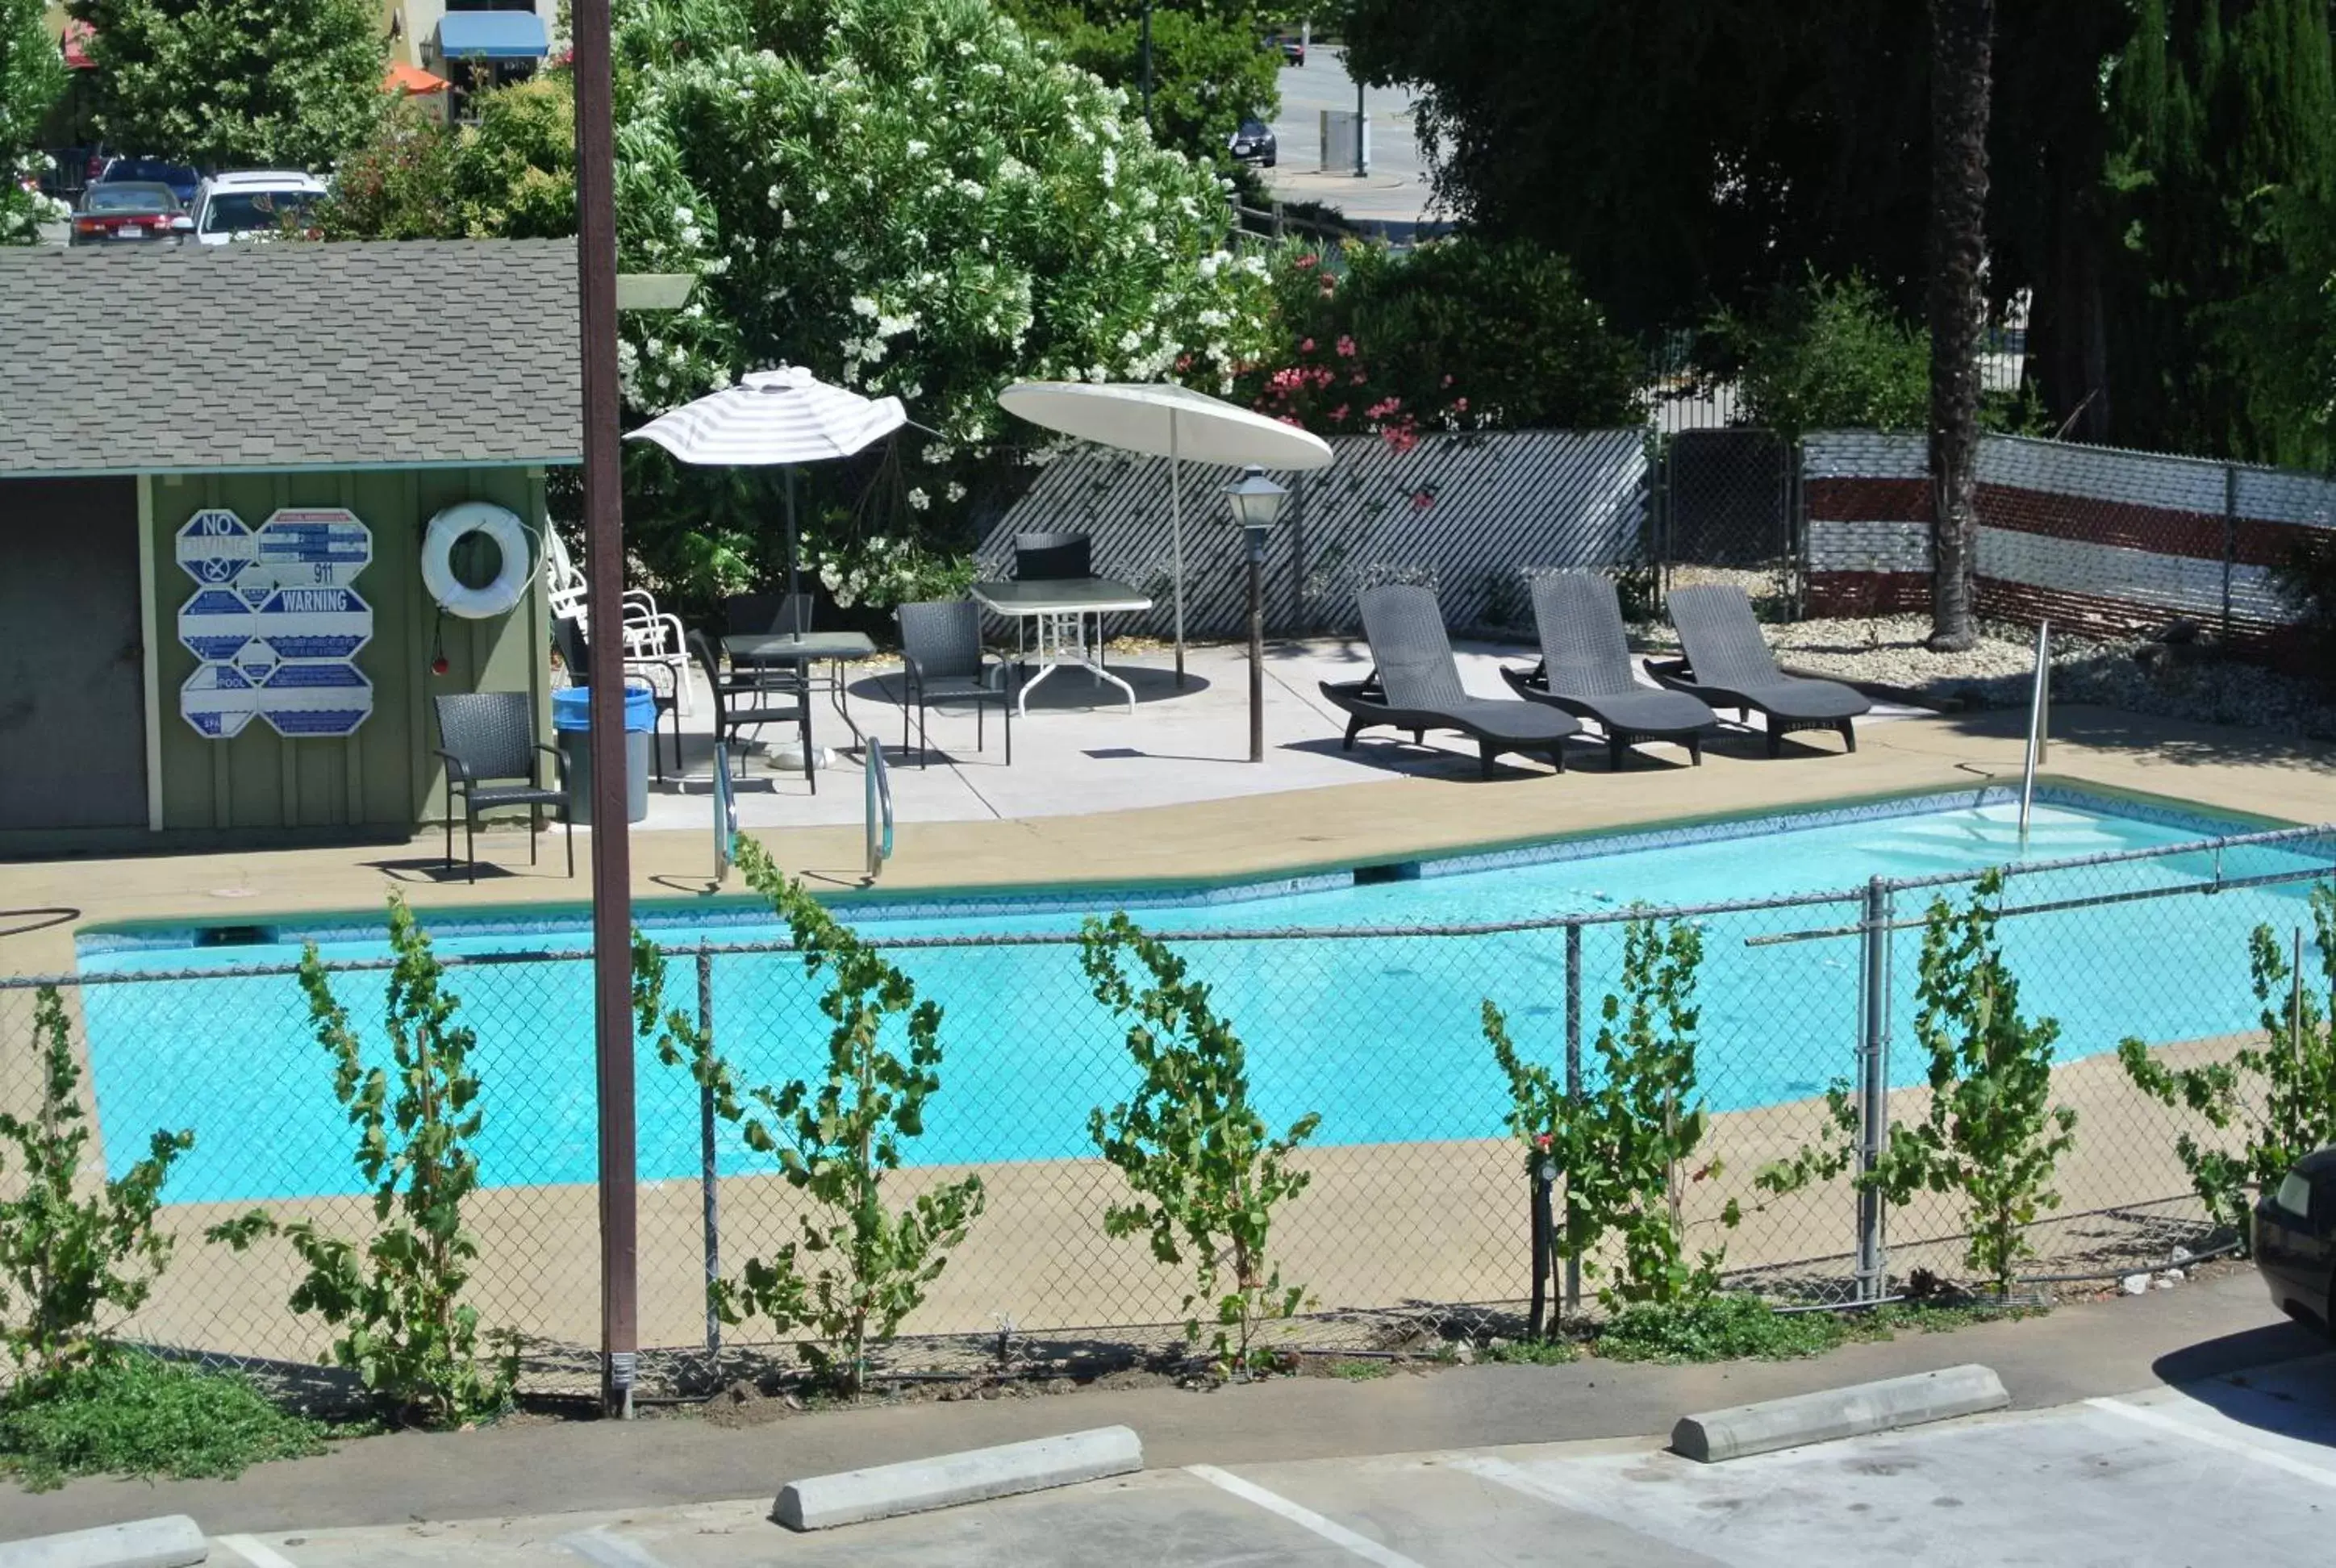 Swimming Pool in Vino Inn & Suites